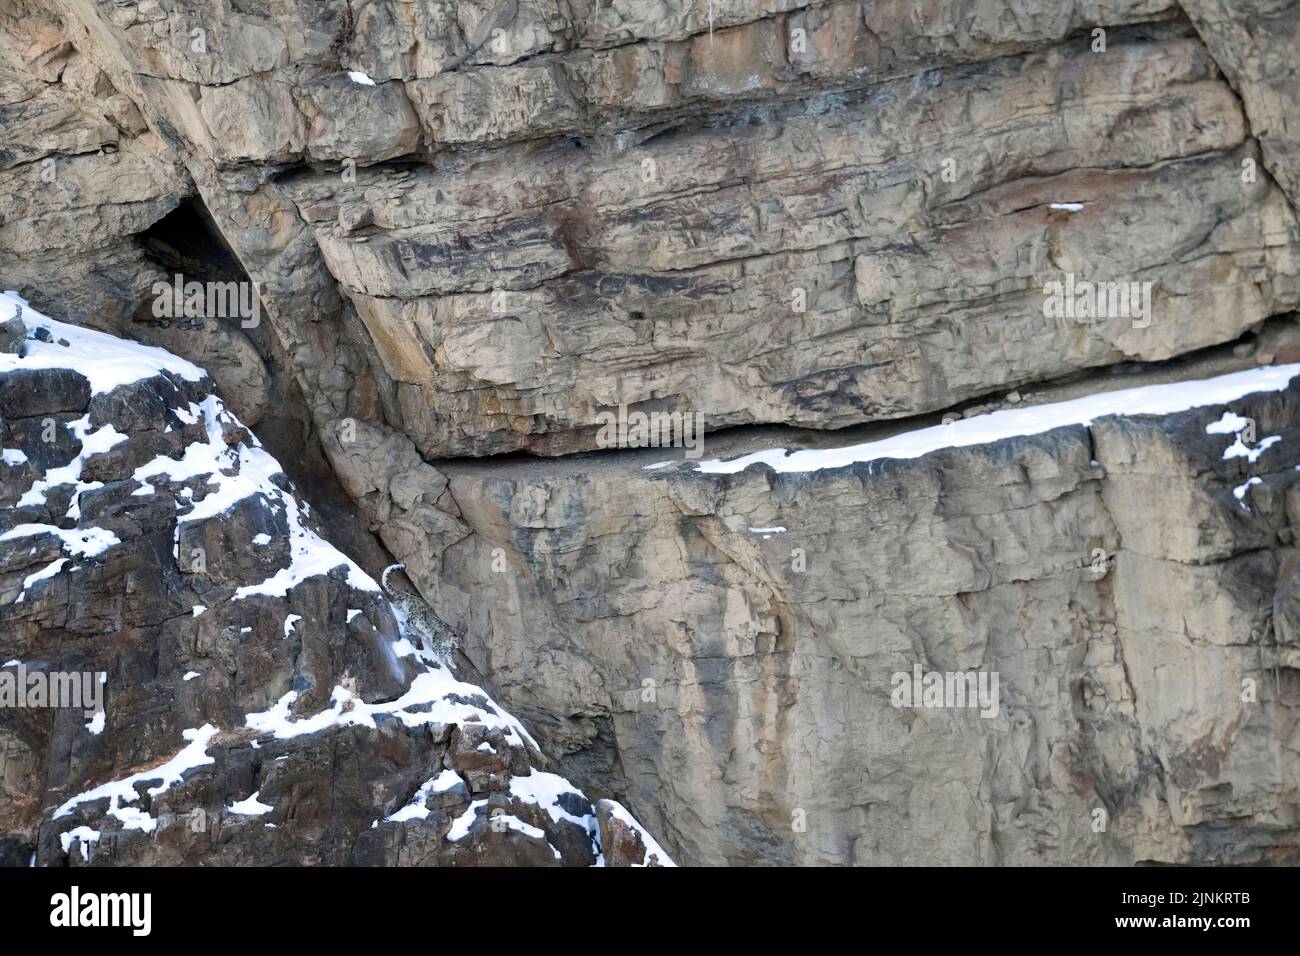 L'image de Snow Leopard (Panthera uncia) a été prise à Spiti Vallety, Himalaya, Inde Banque D'Images